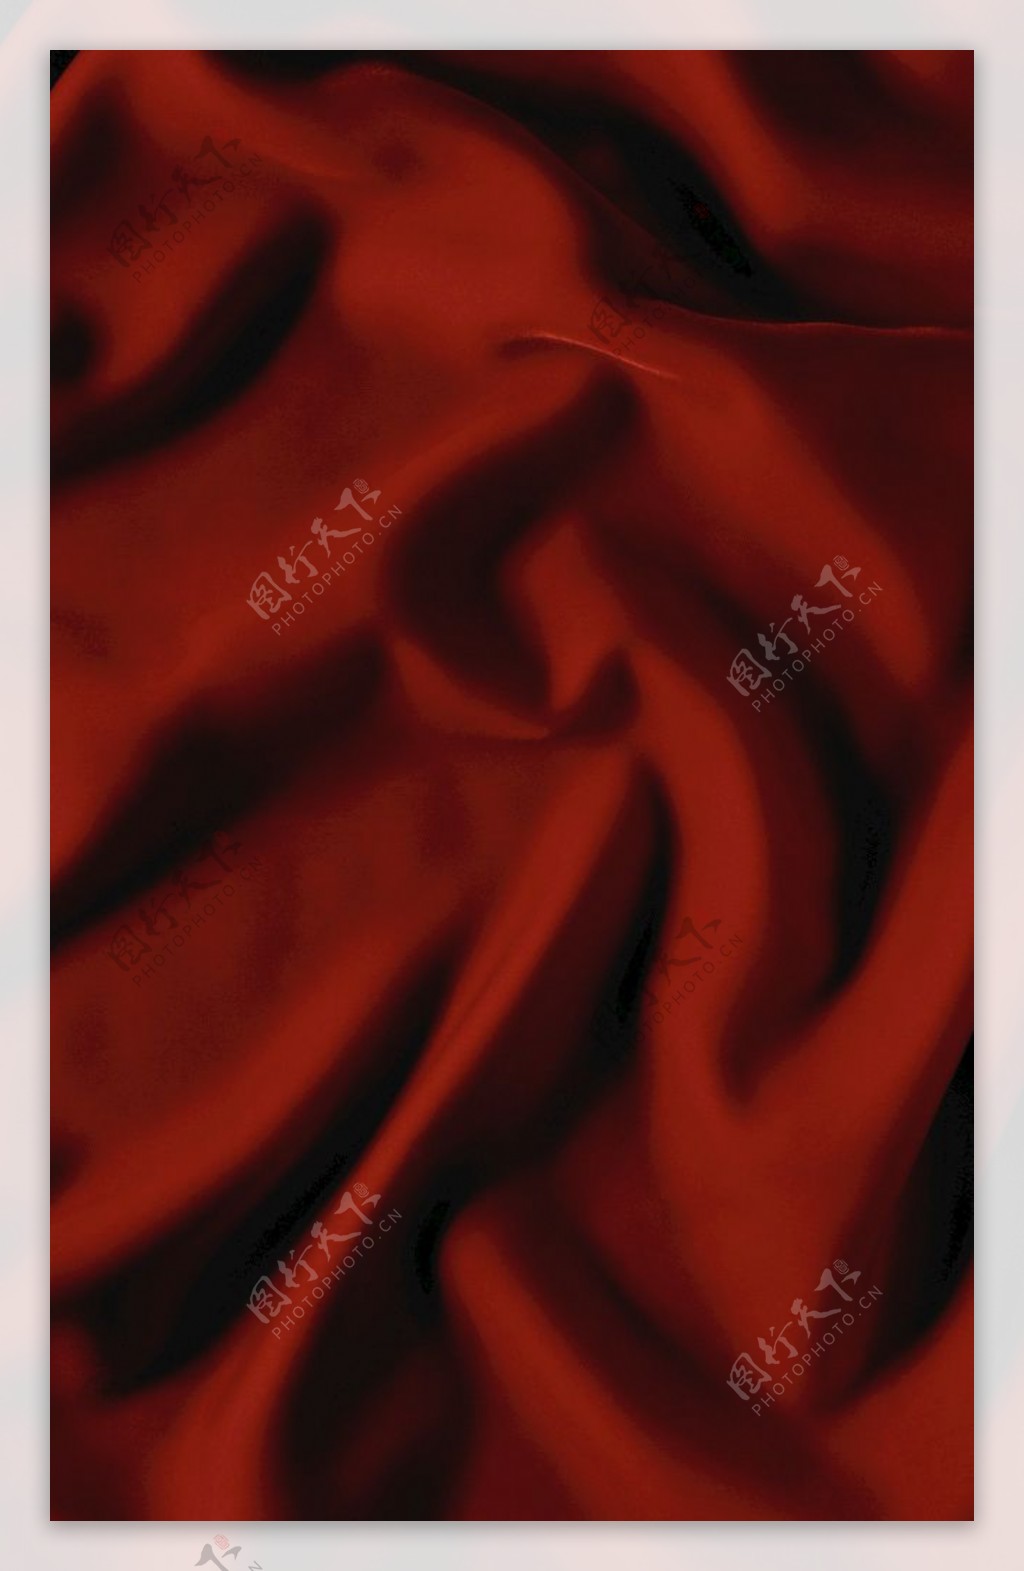 红色丝绸布纹纹理缎子图片